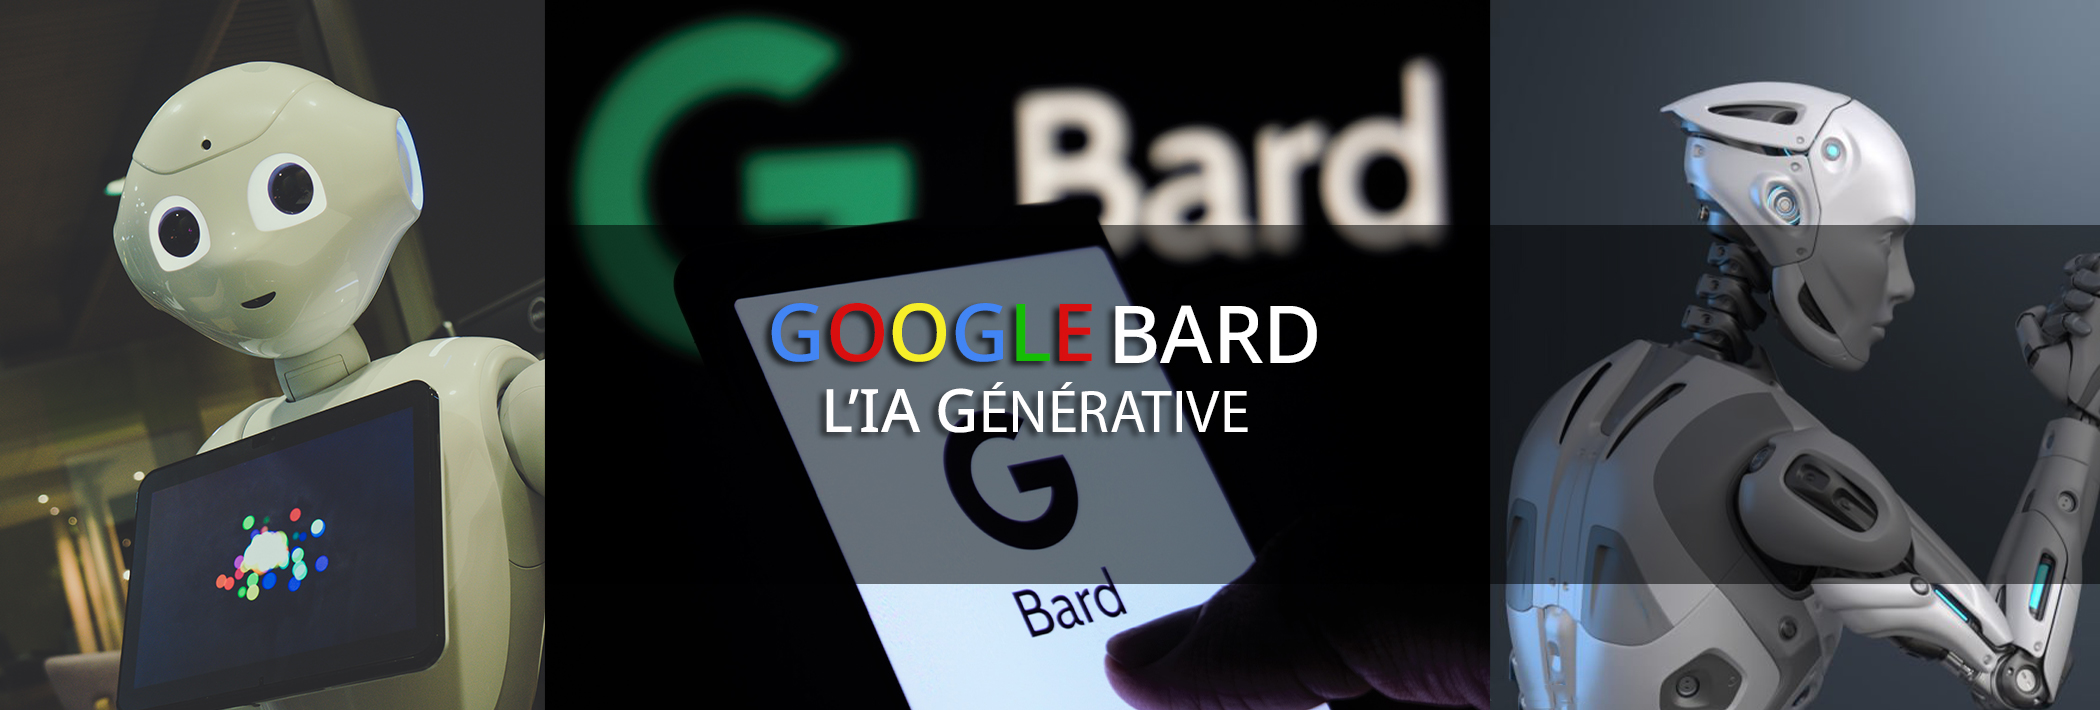 Bard, la nouvelle IA Google